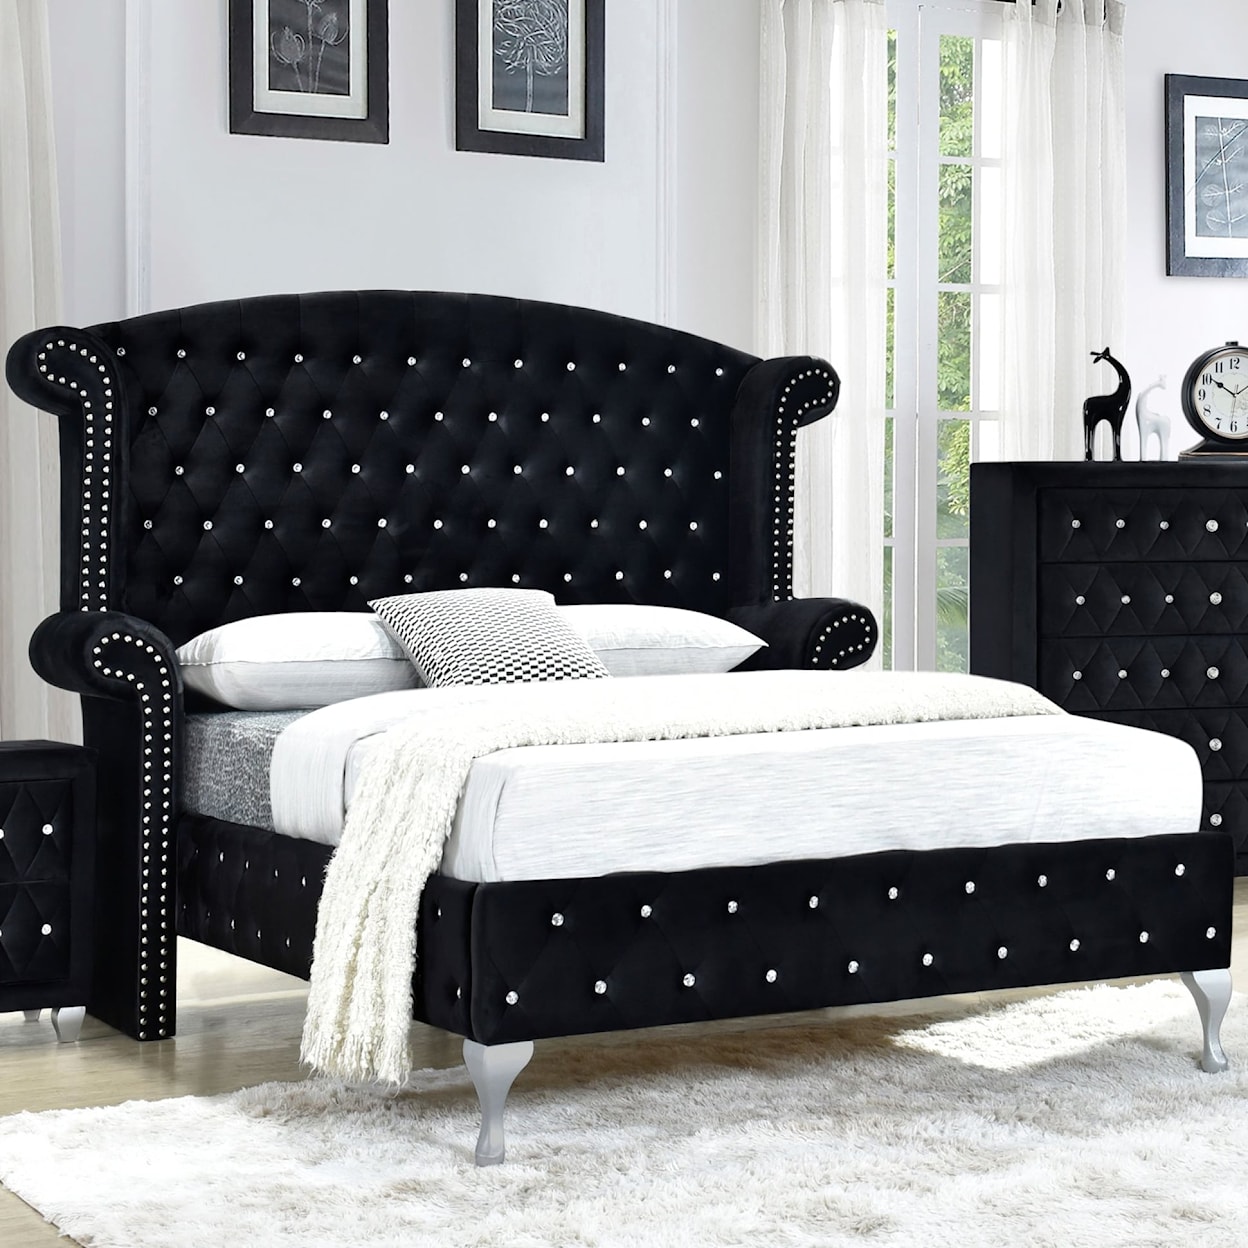 Titanic Furniture Black Panther BLACK PANTHER II KING BED |